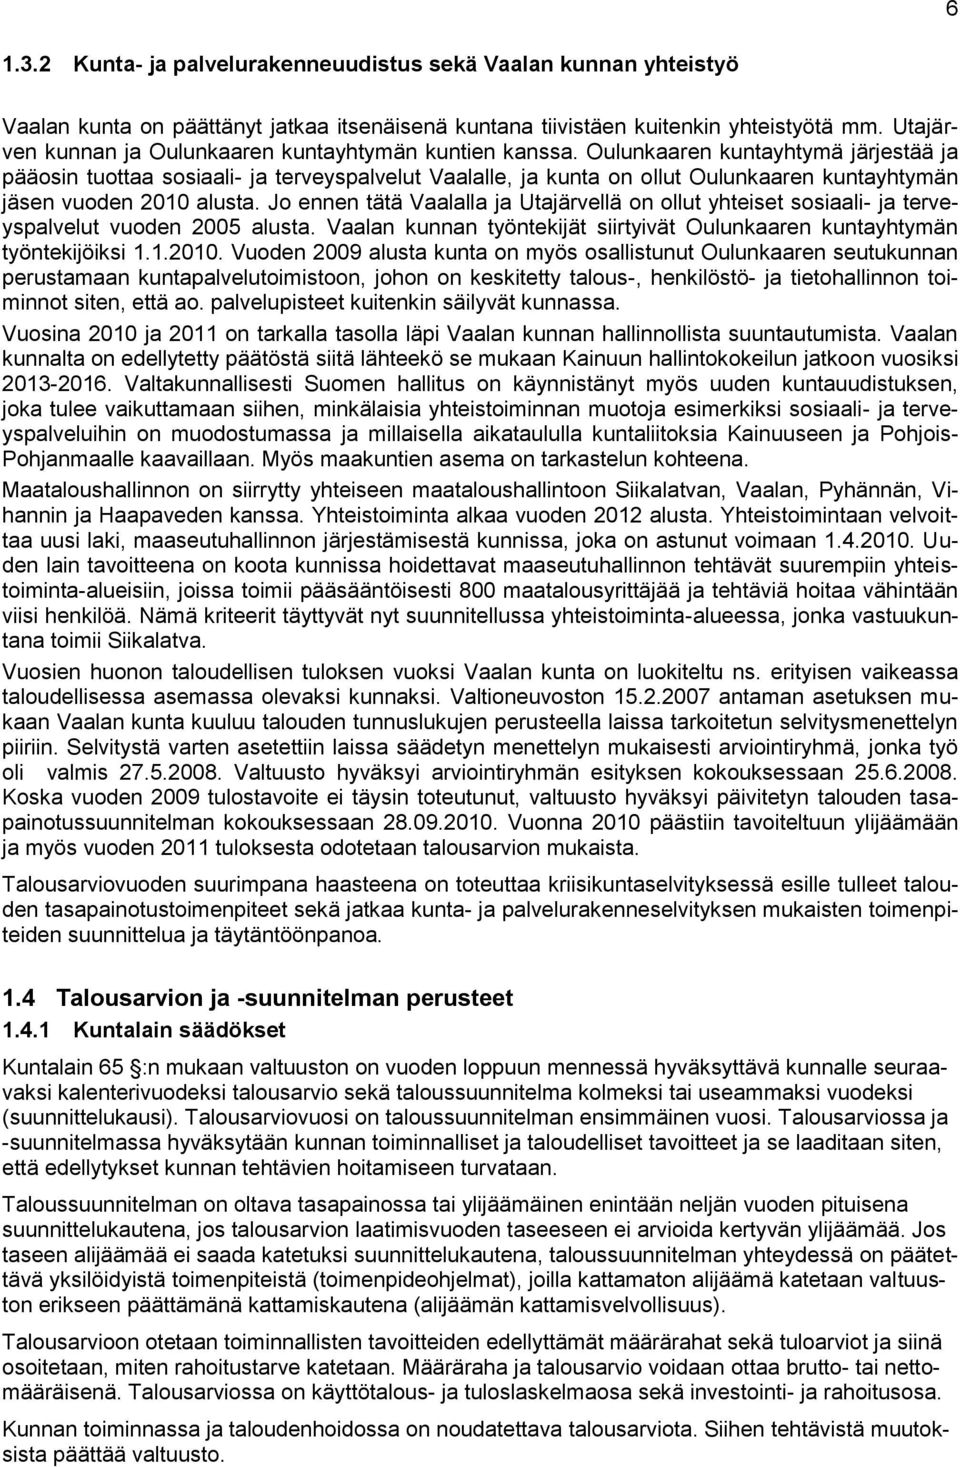 Oulunkaaren kuntayhtymä järjestää ja pääosin tuottaa sosiaali- ja terveyspalvelut Vaalalle, ja kunta on ollut Oulunkaaren kuntayhtymän jäsen vuoden 2010 alusta.